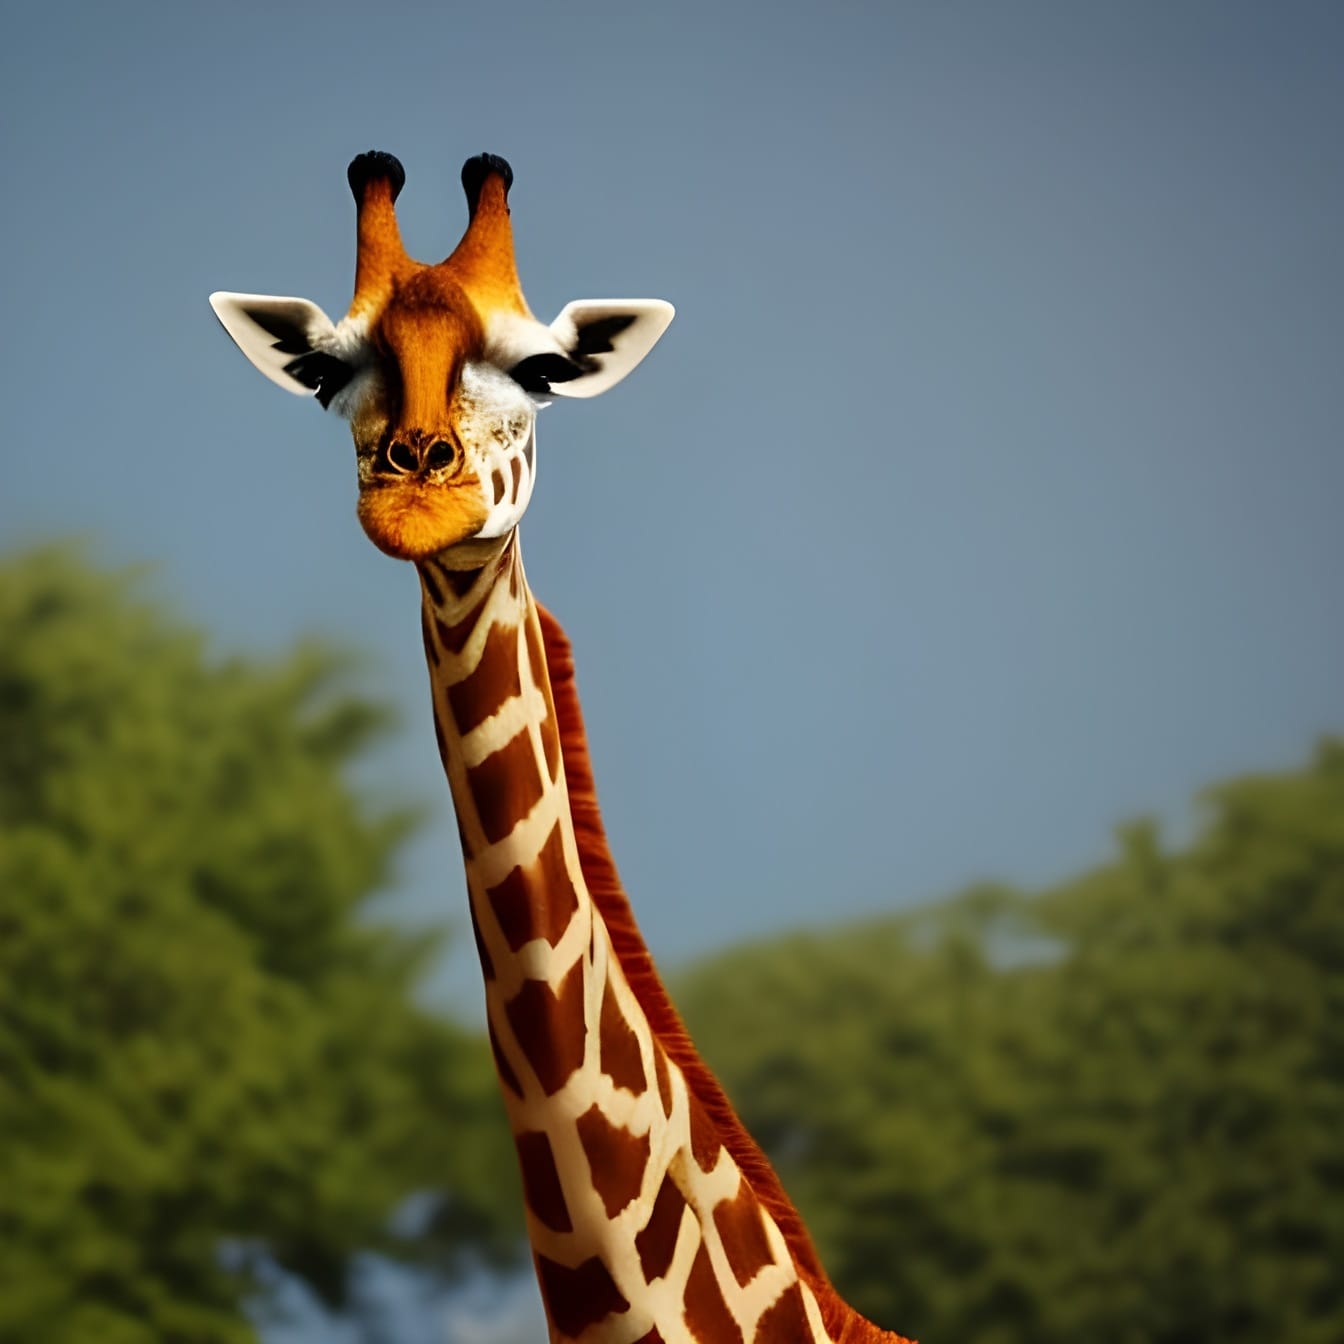 Hươu cao cổ trên (Giraffa) cổ dài – nghệ thuật trí tuệ nhân tạo